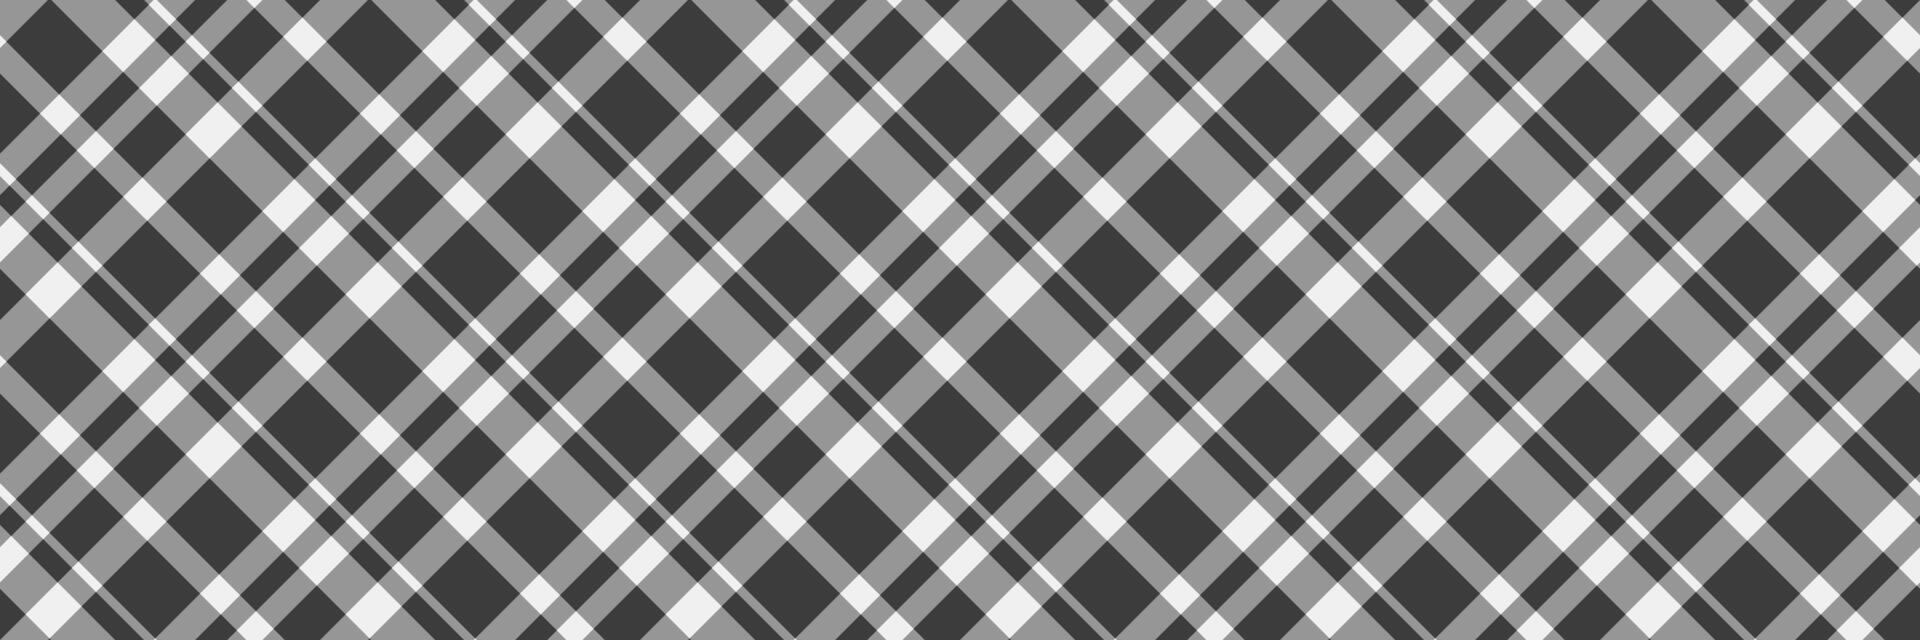 Op maat Schotse ruit vector achtergrond, echt controleren plaid patroon. industrie naadloos textiel kleding stof structuur in wijnoogst grijs en grijs kleuren.